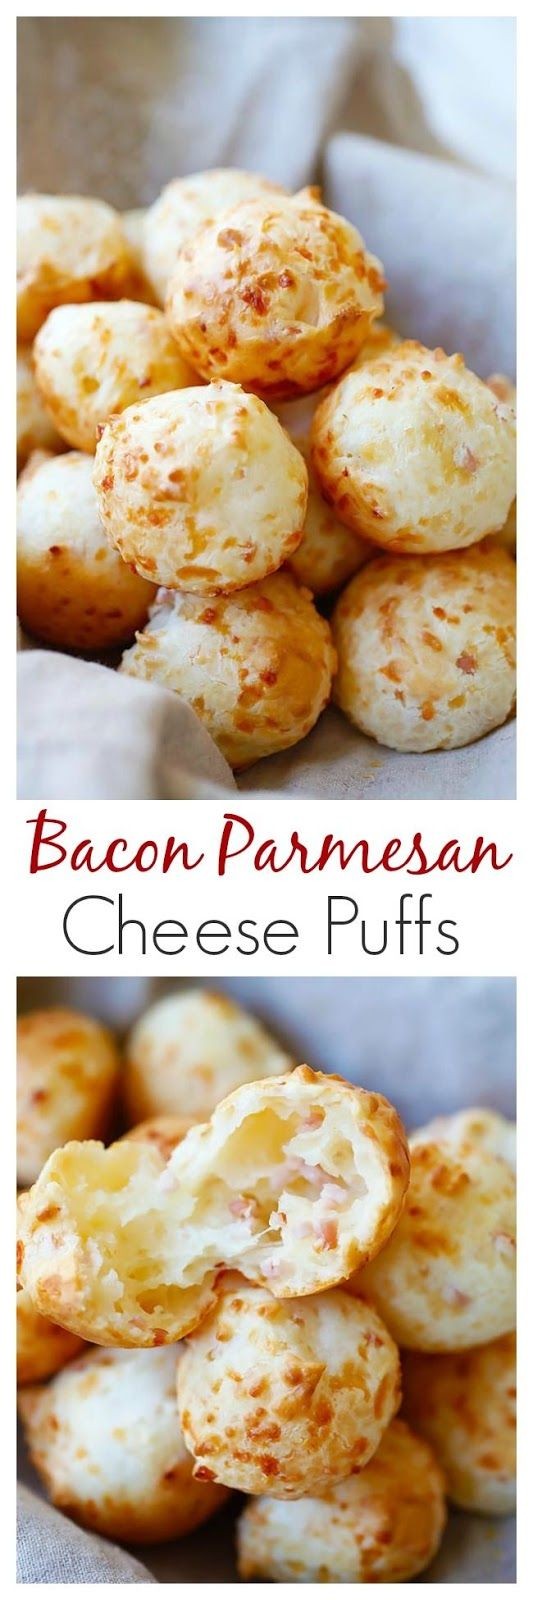 Bacon Parmesan Cheese Puffs